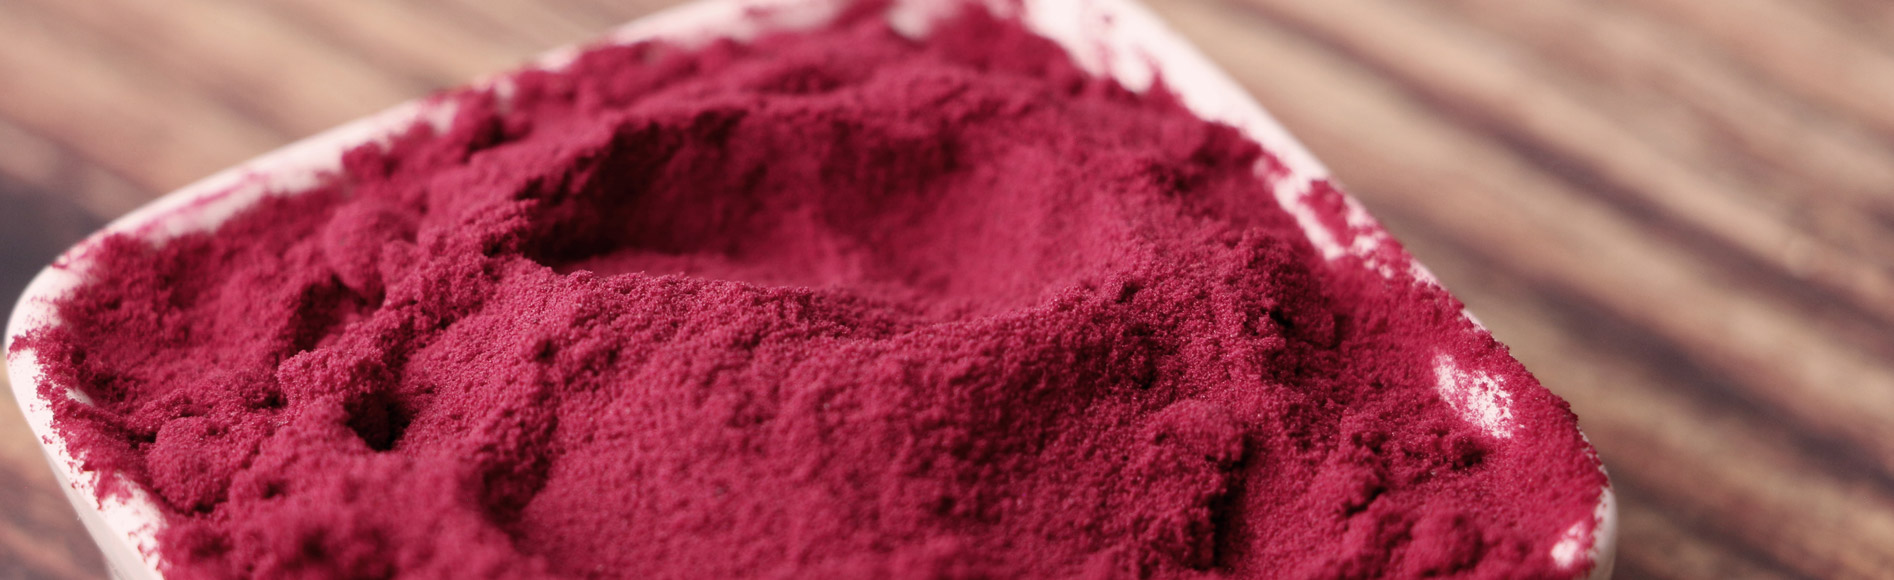 FruiVeg® 弗瑞威格 速溶甜菜粉 具有原料特有色泽